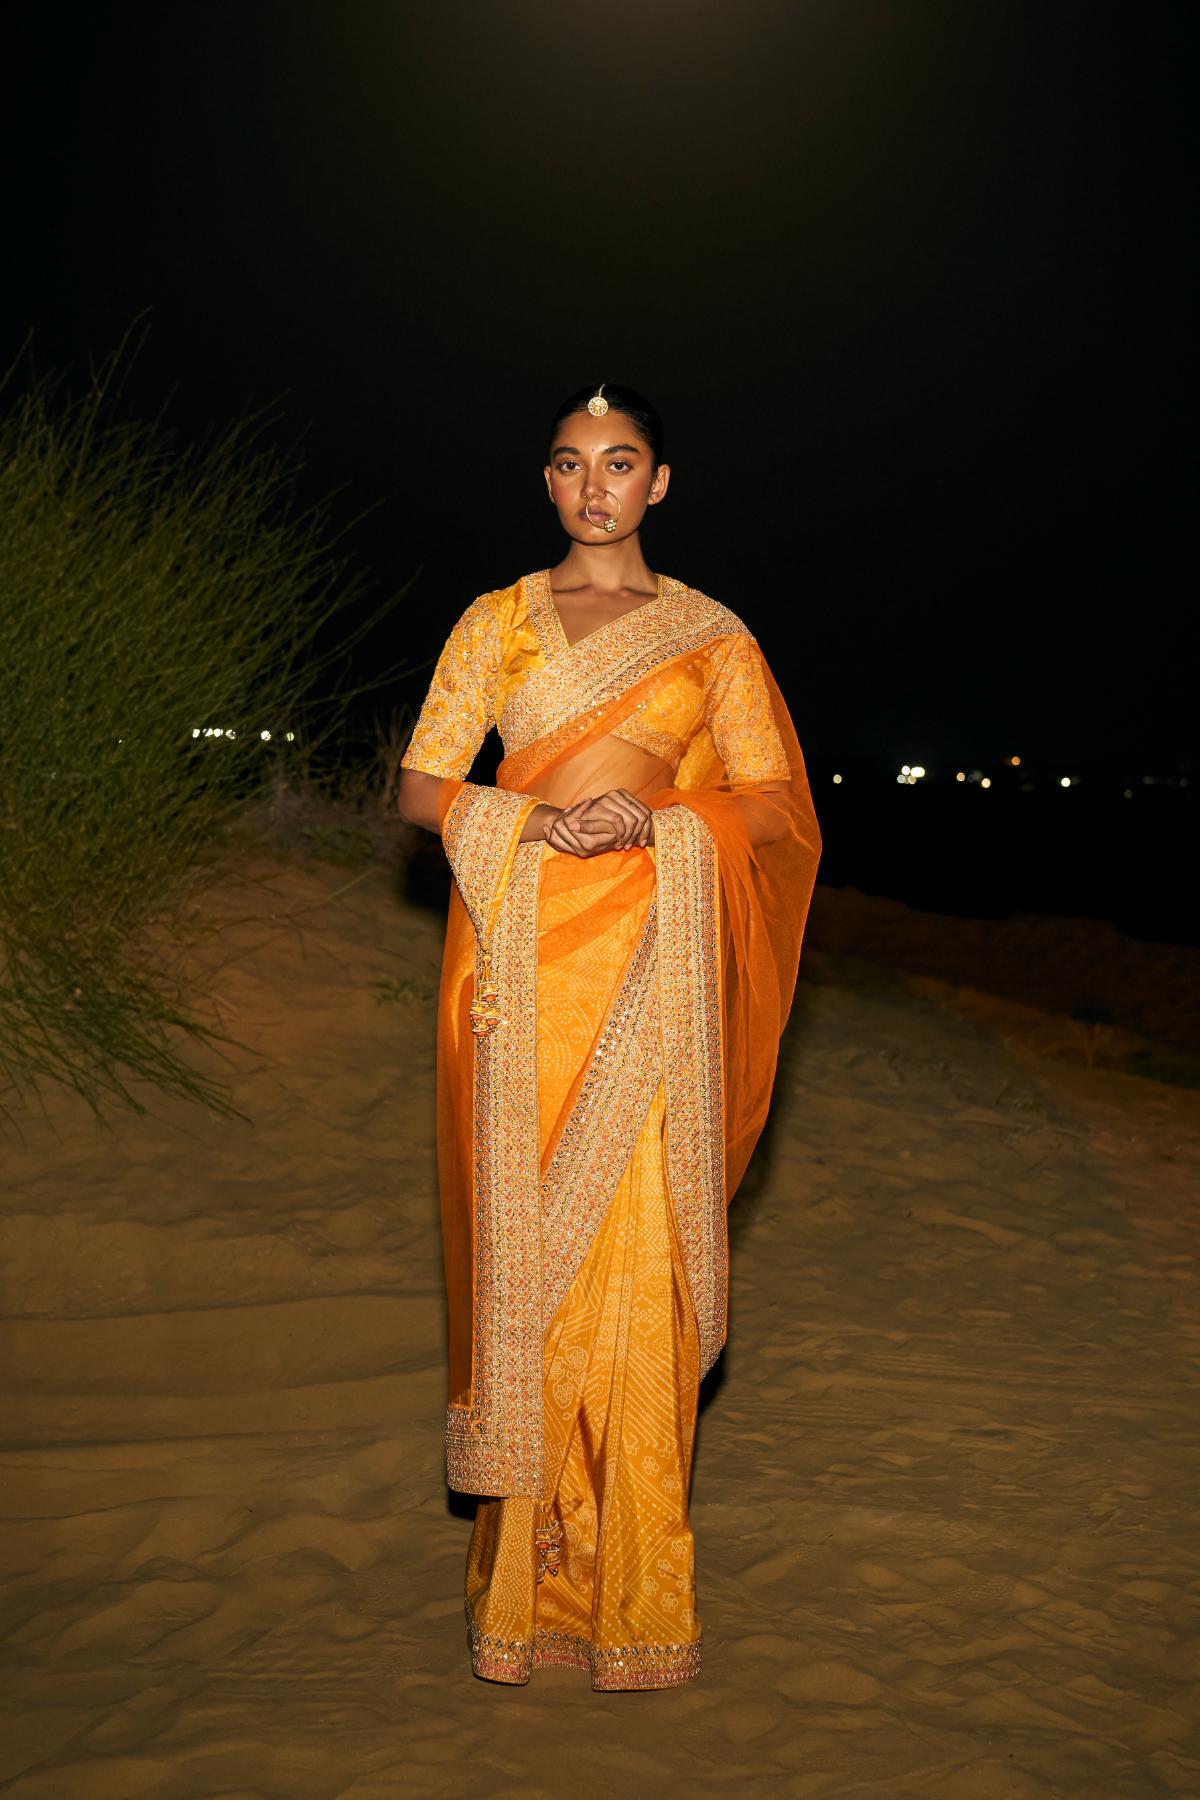 Classic sari